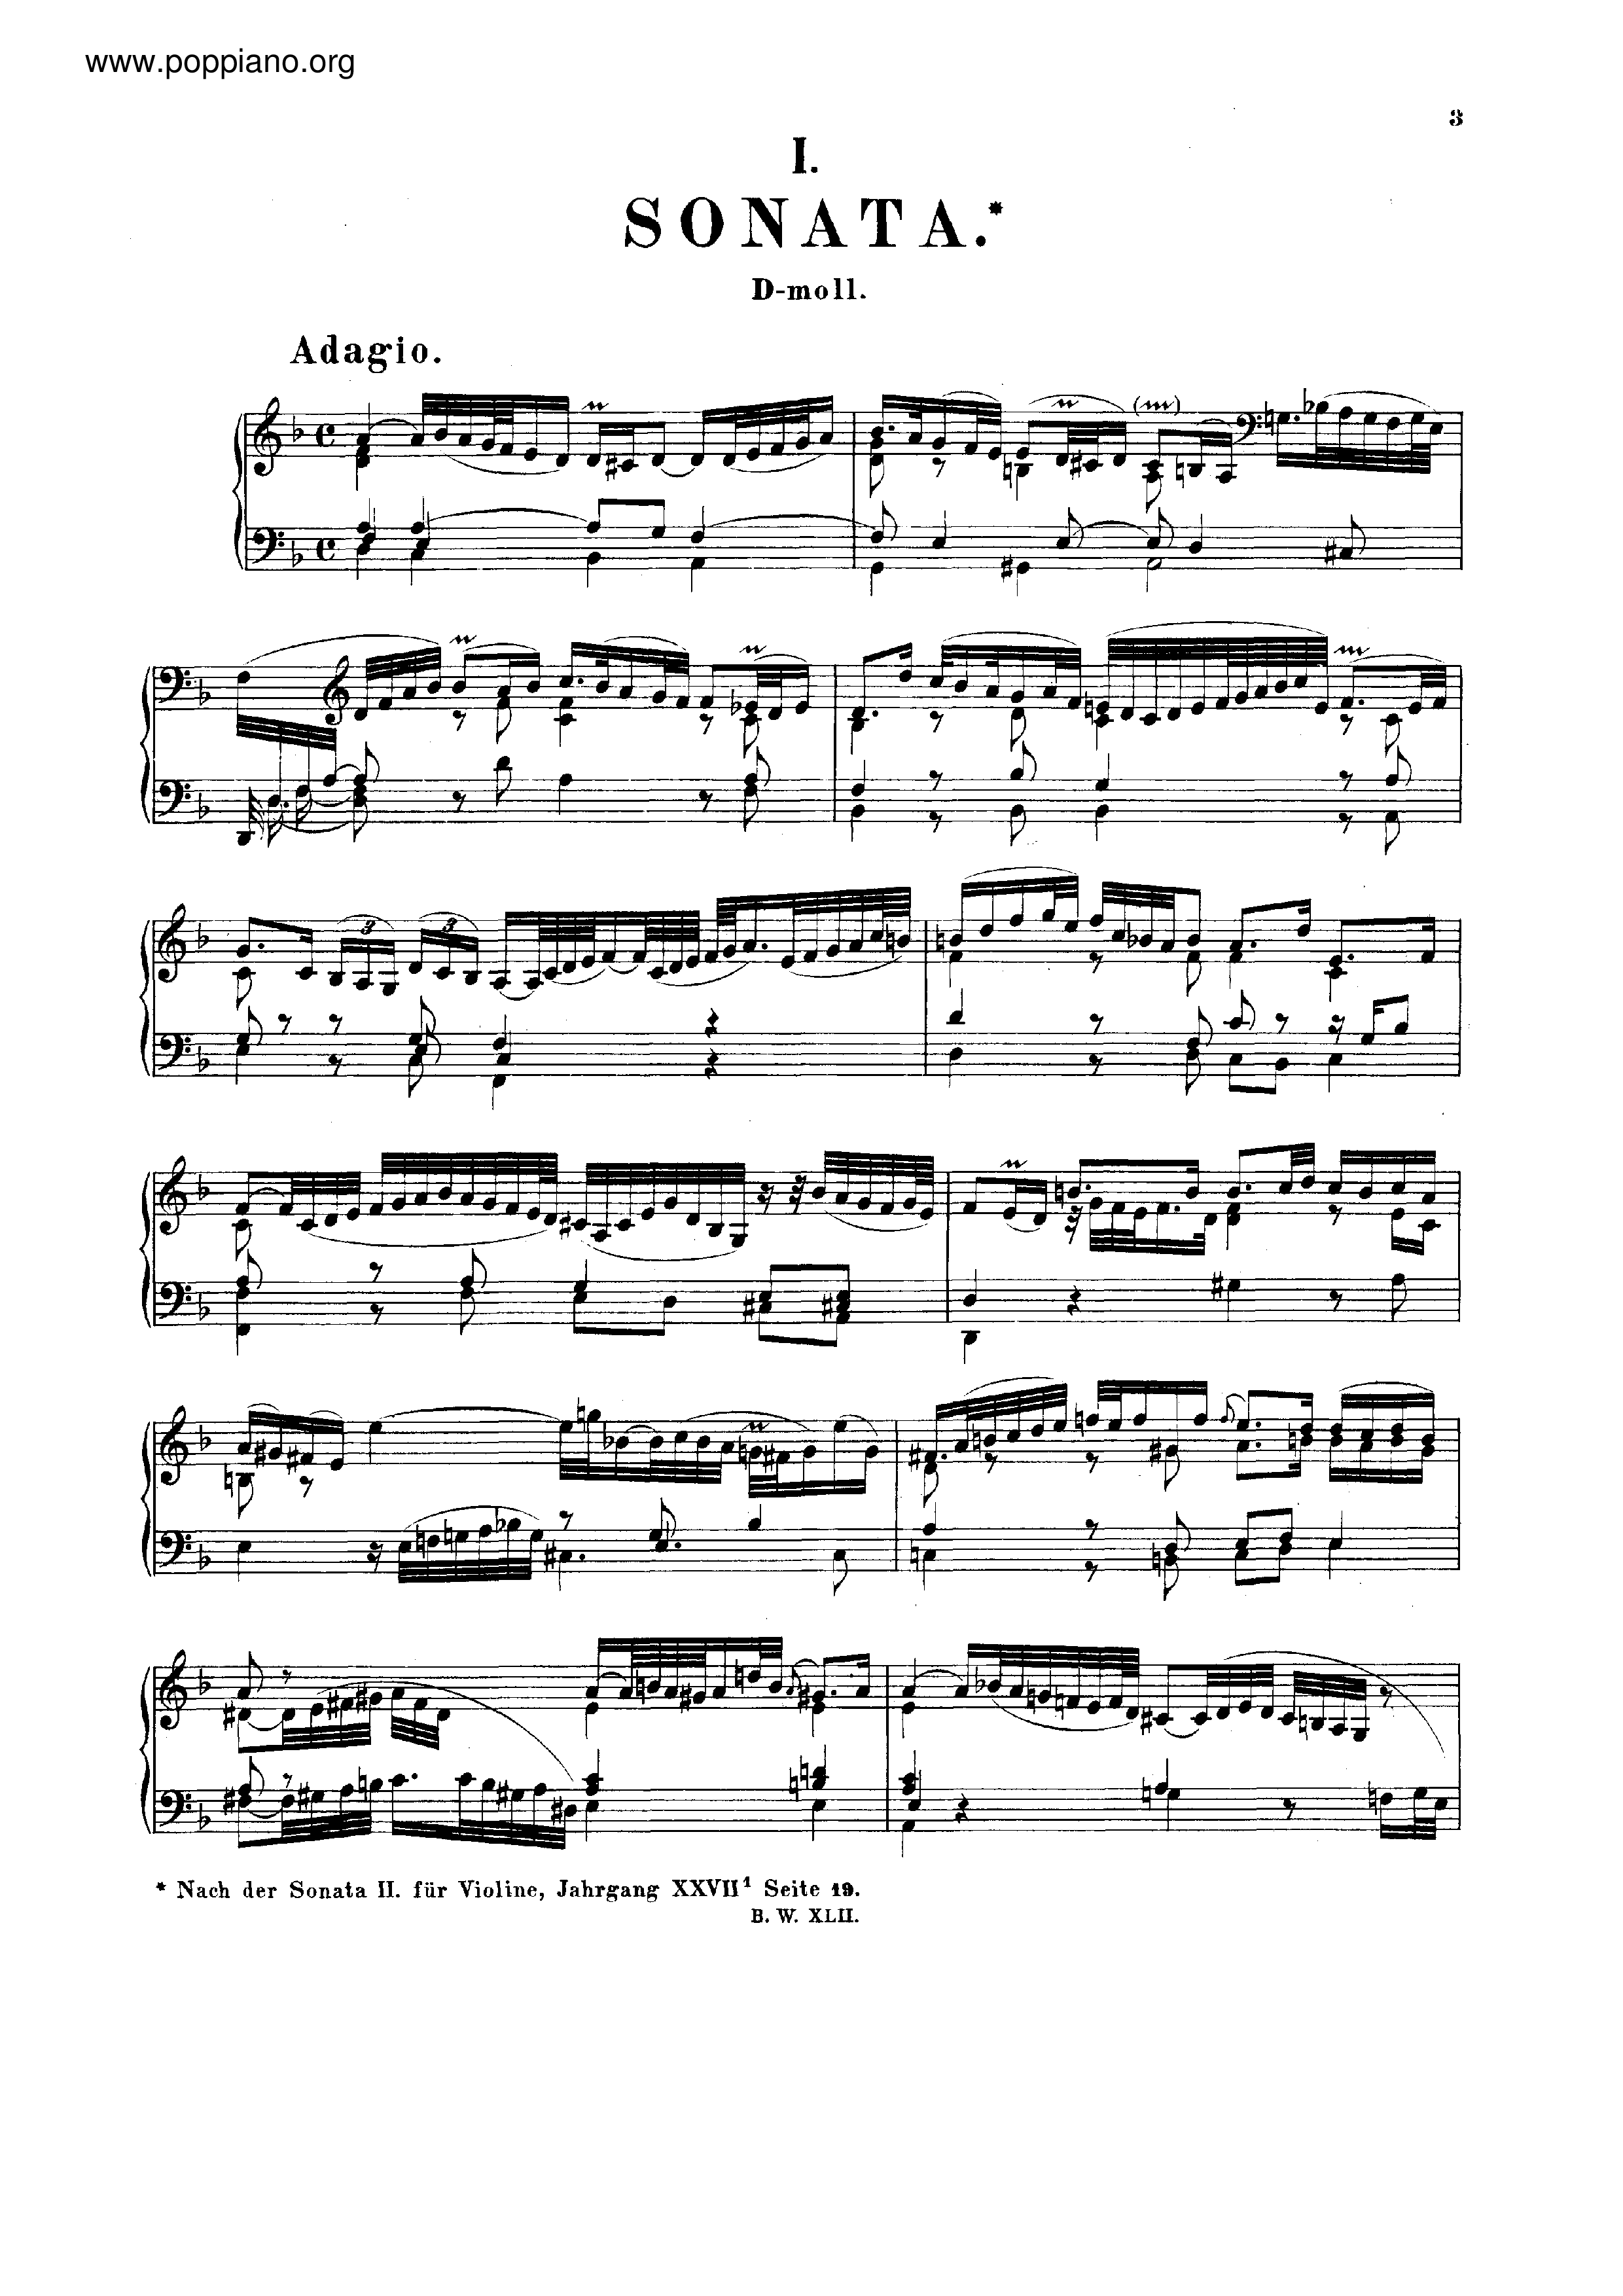 Sonata in D minor, BWV 964 Score